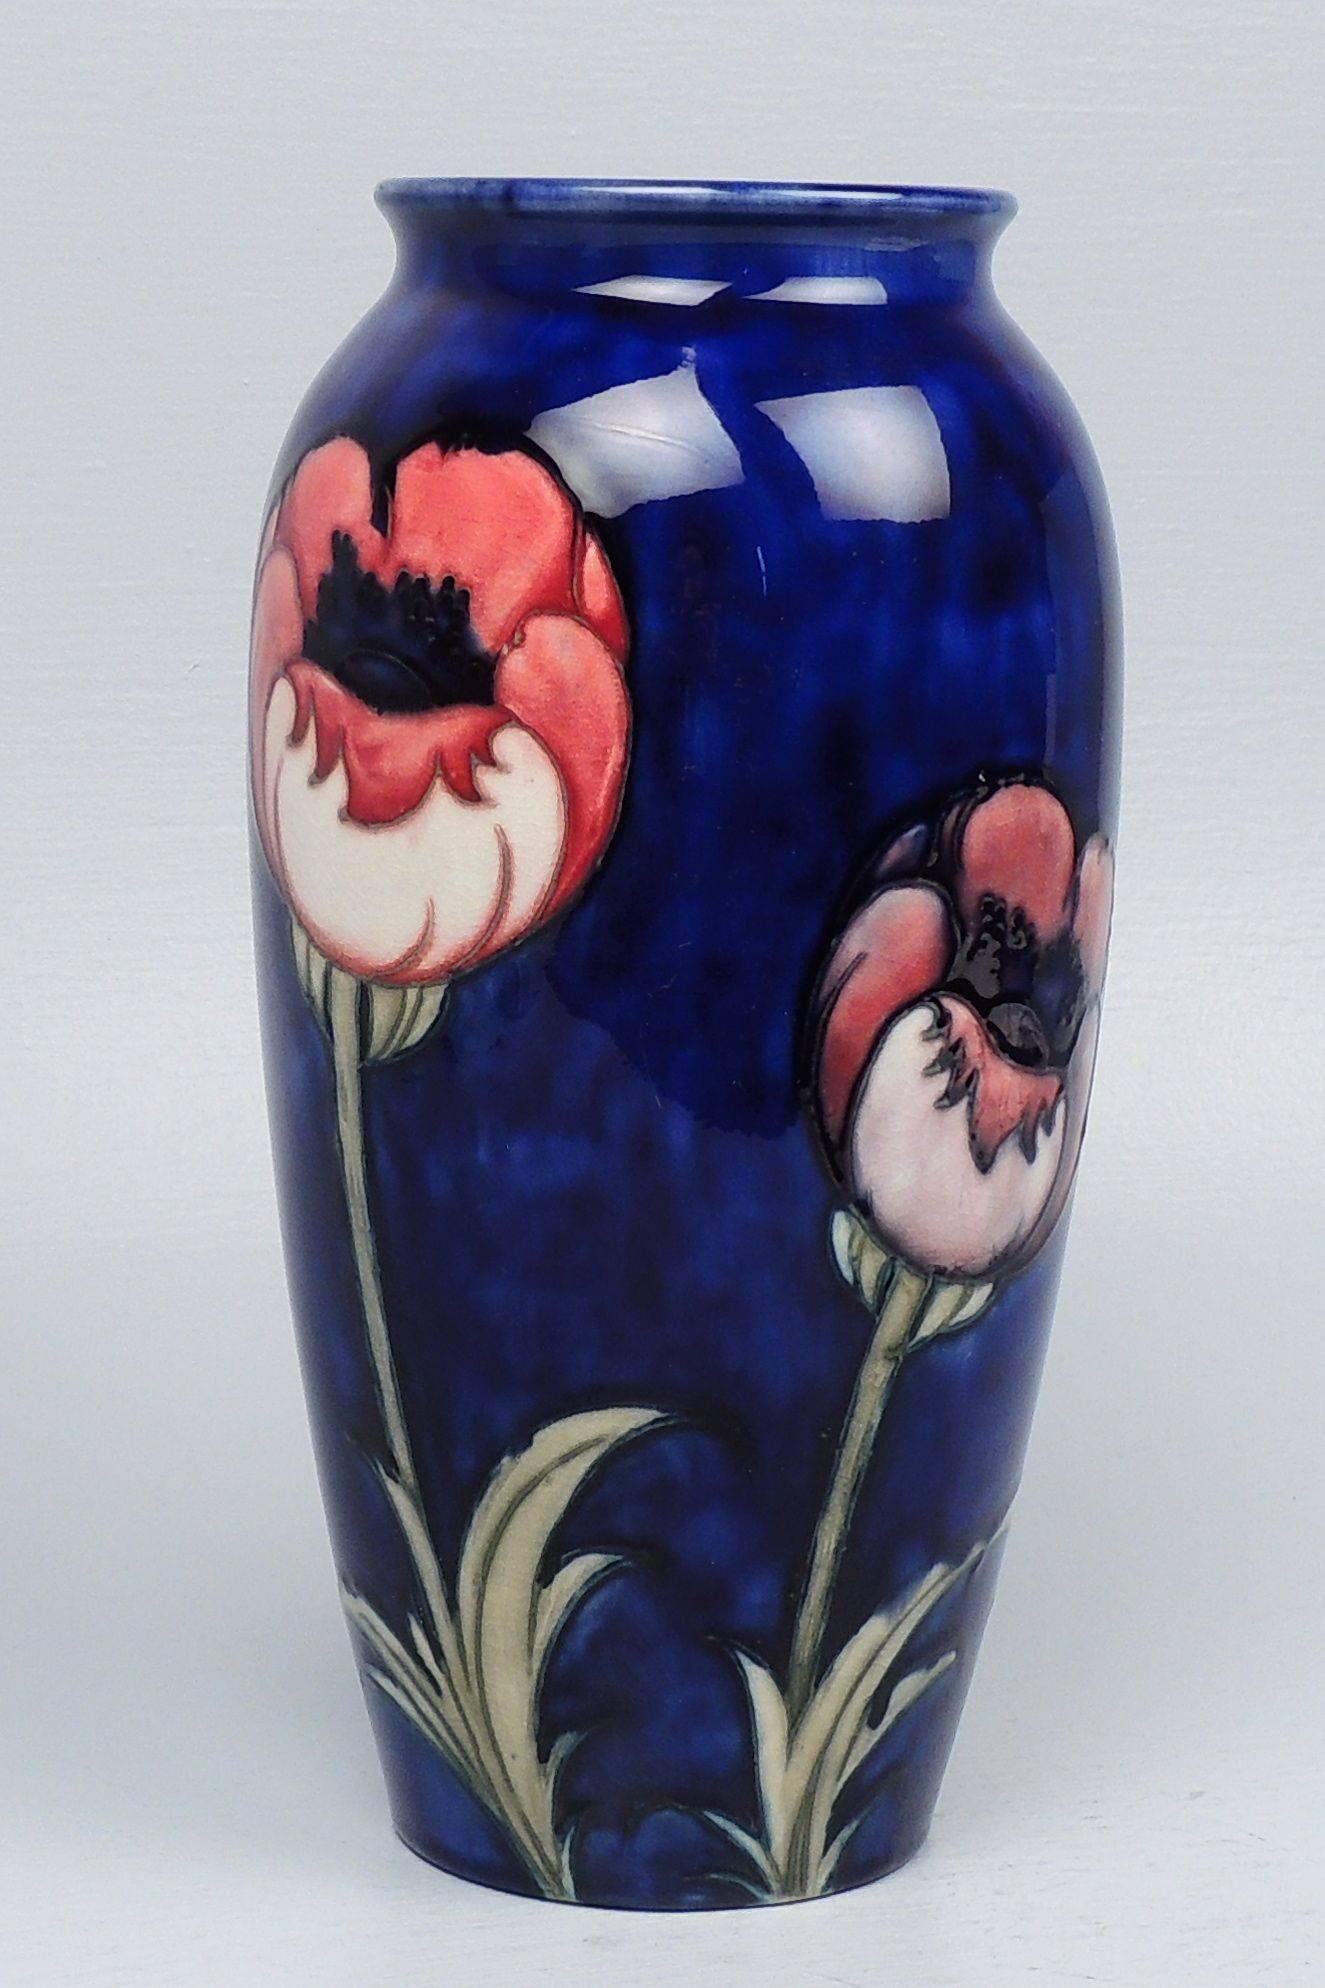 Eine große Vase von Moorcroft Pottery mit Mohn. 

Ära Walter Moorcroft.

Der Sockel trägt eingeprägte Marken und eine blau glasierte Walter Moorcroft Signatur. 

Höhe: ca. 10 Zoll.

Gegenstände, die Sie bei David Sterner Antiquitäten kaufen,